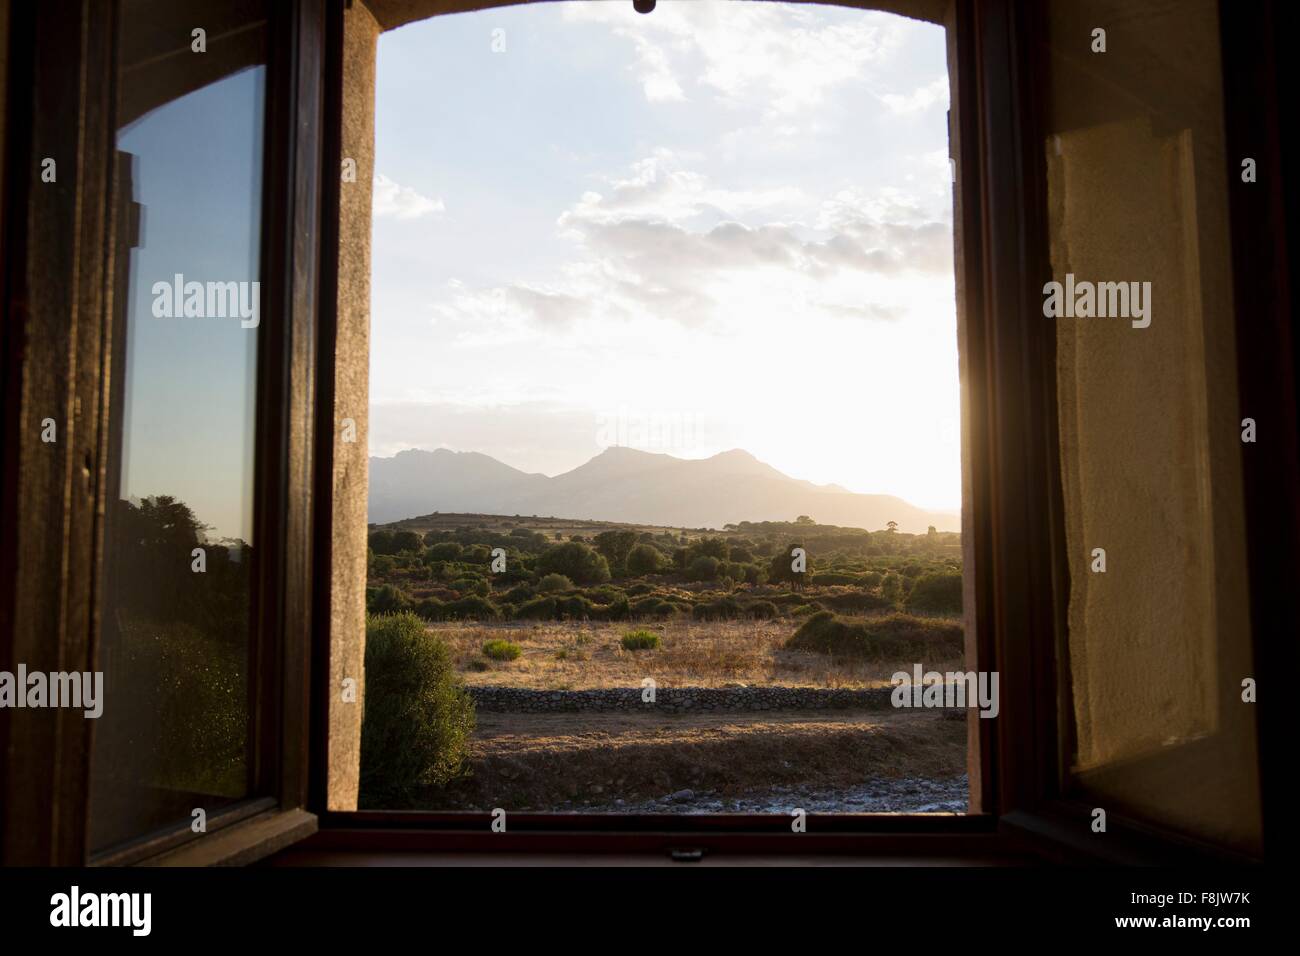 Vue de la fenêtre ouverte du paysage rural au crépuscule, Calvi, Corse, France Banque D'Images